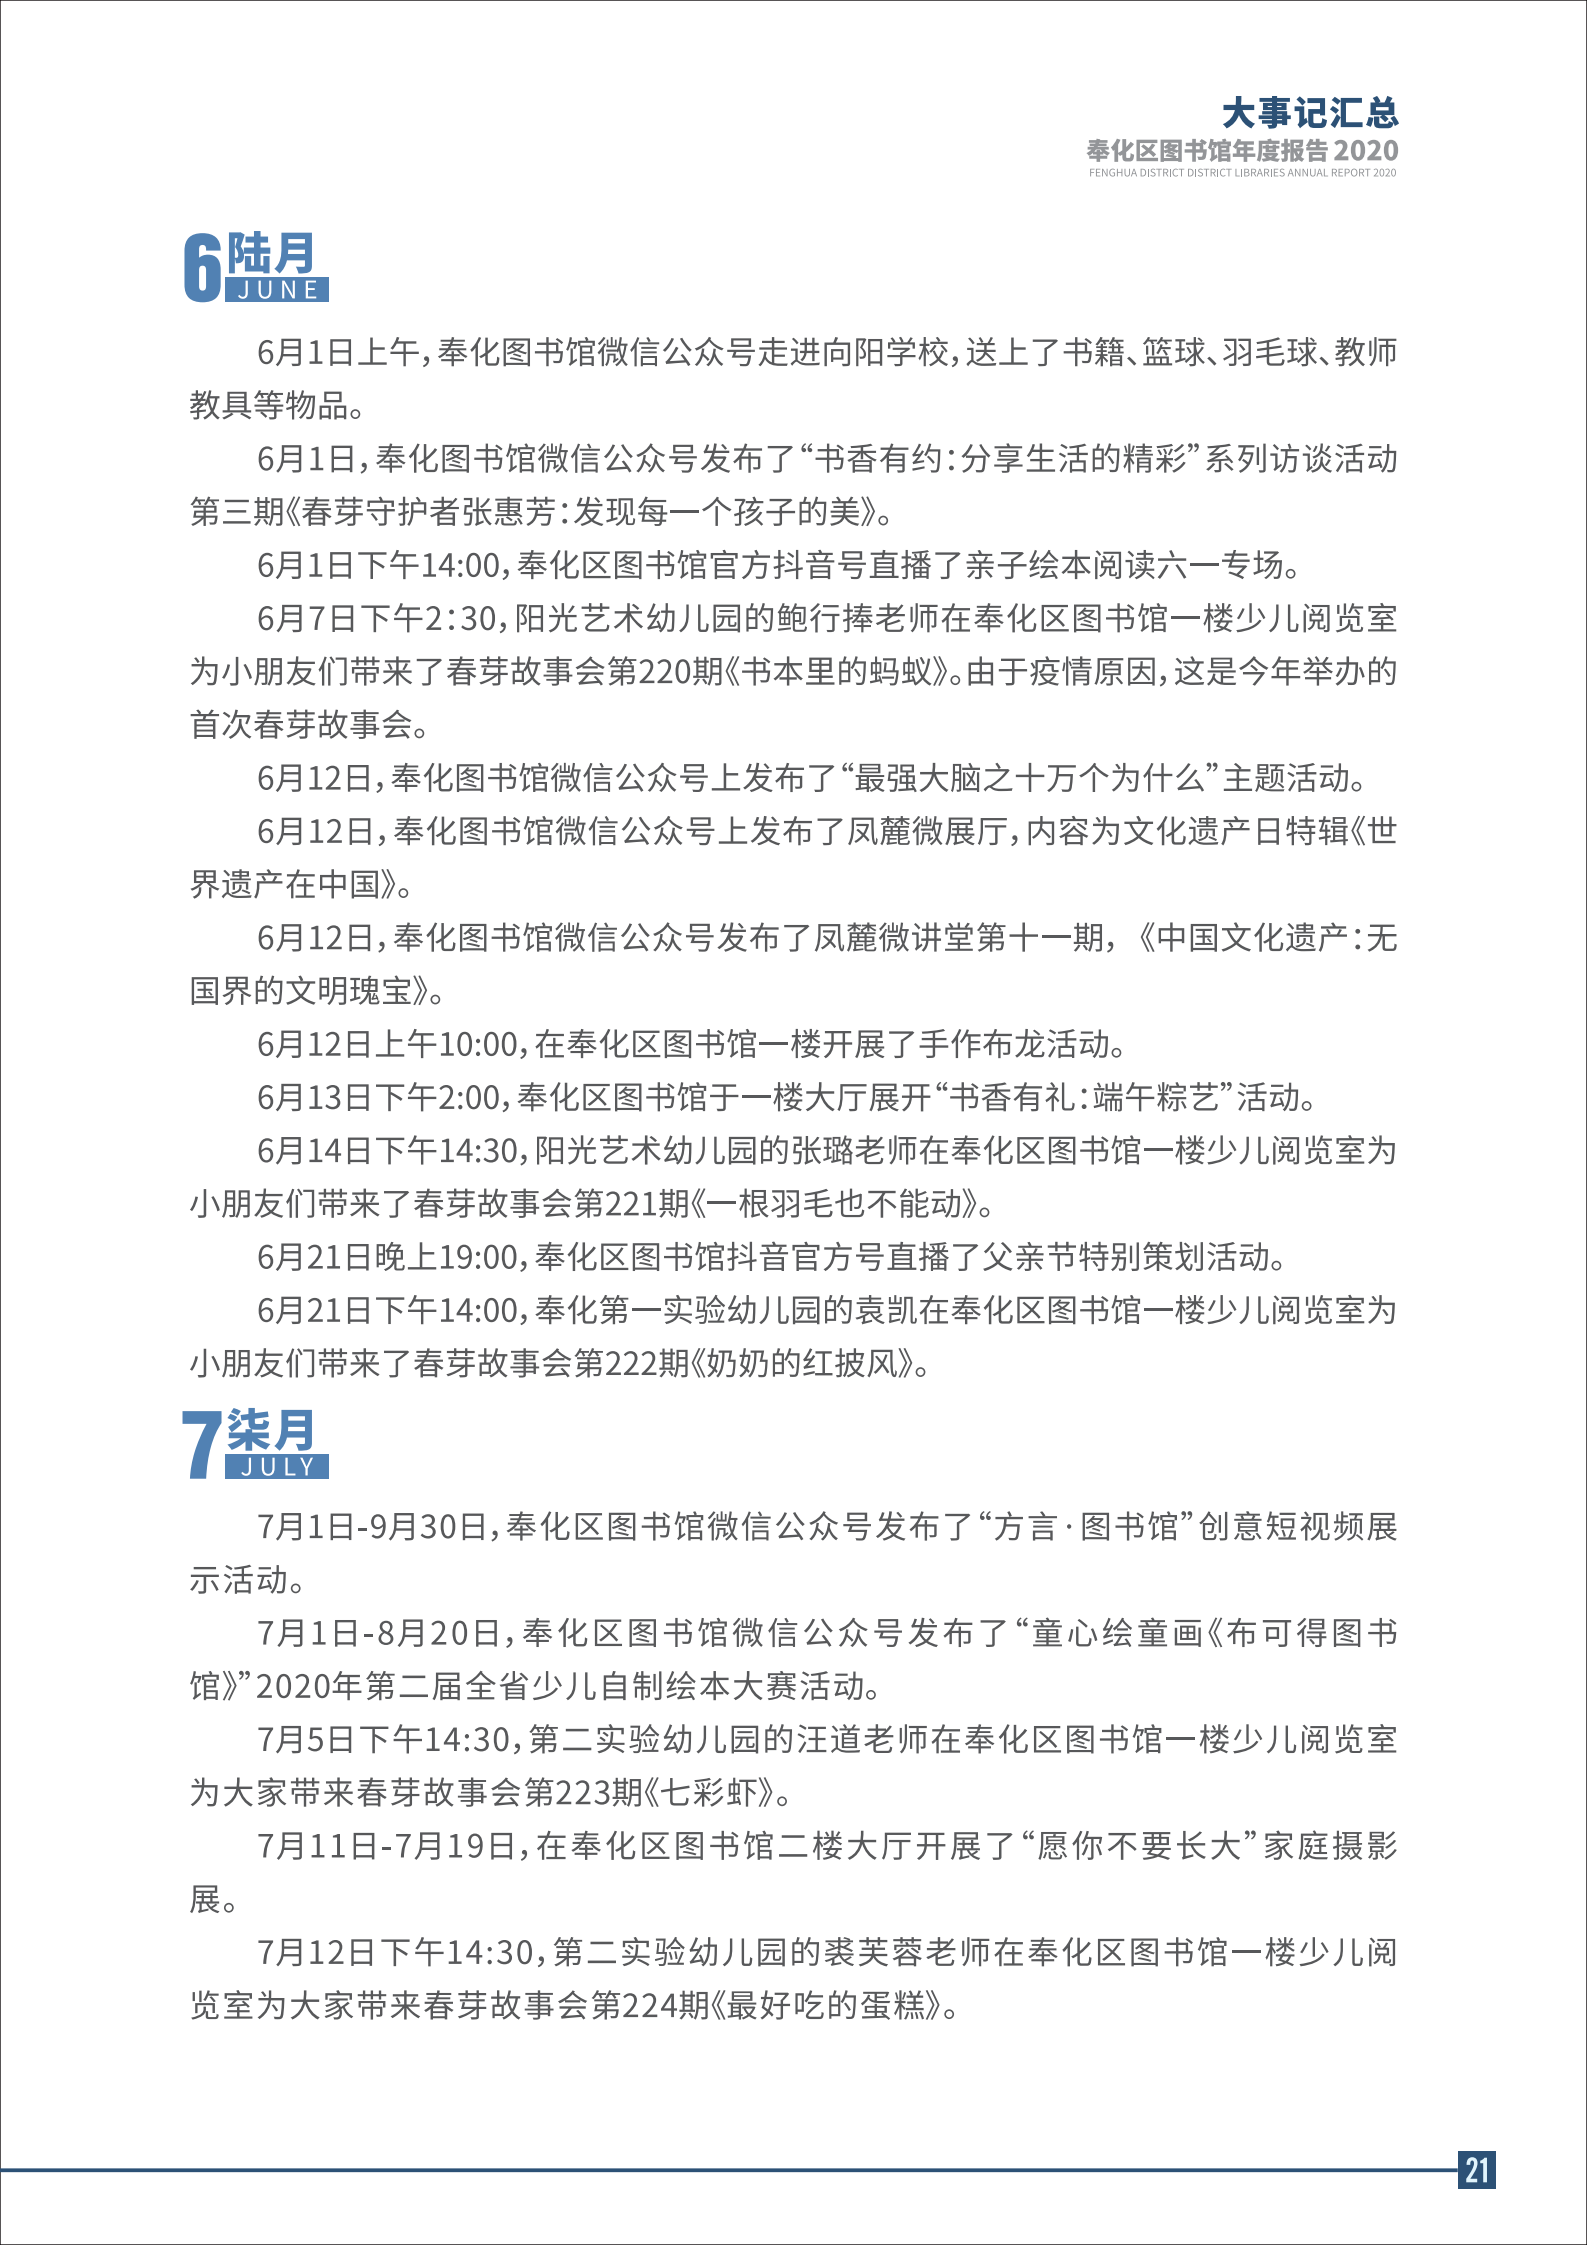 宁波市奉化区图书馆2020年年度报告 终稿_21.png